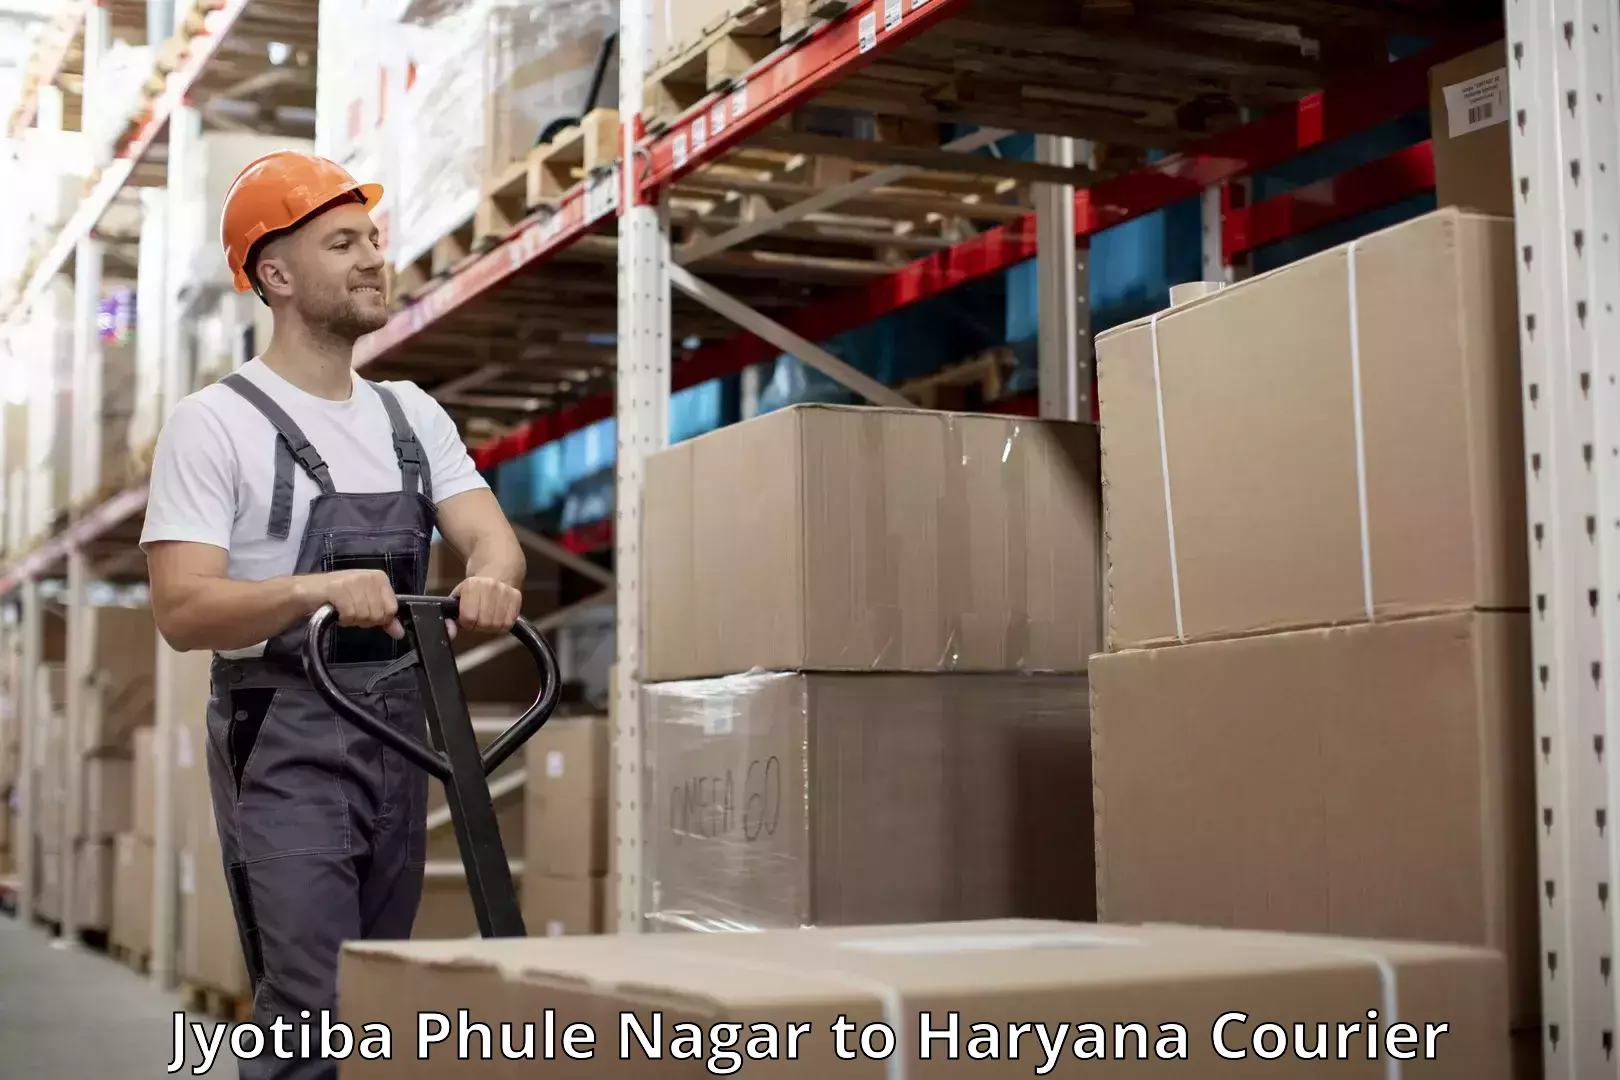 Baggage shipping service Jyotiba Phule Nagar to Haryana